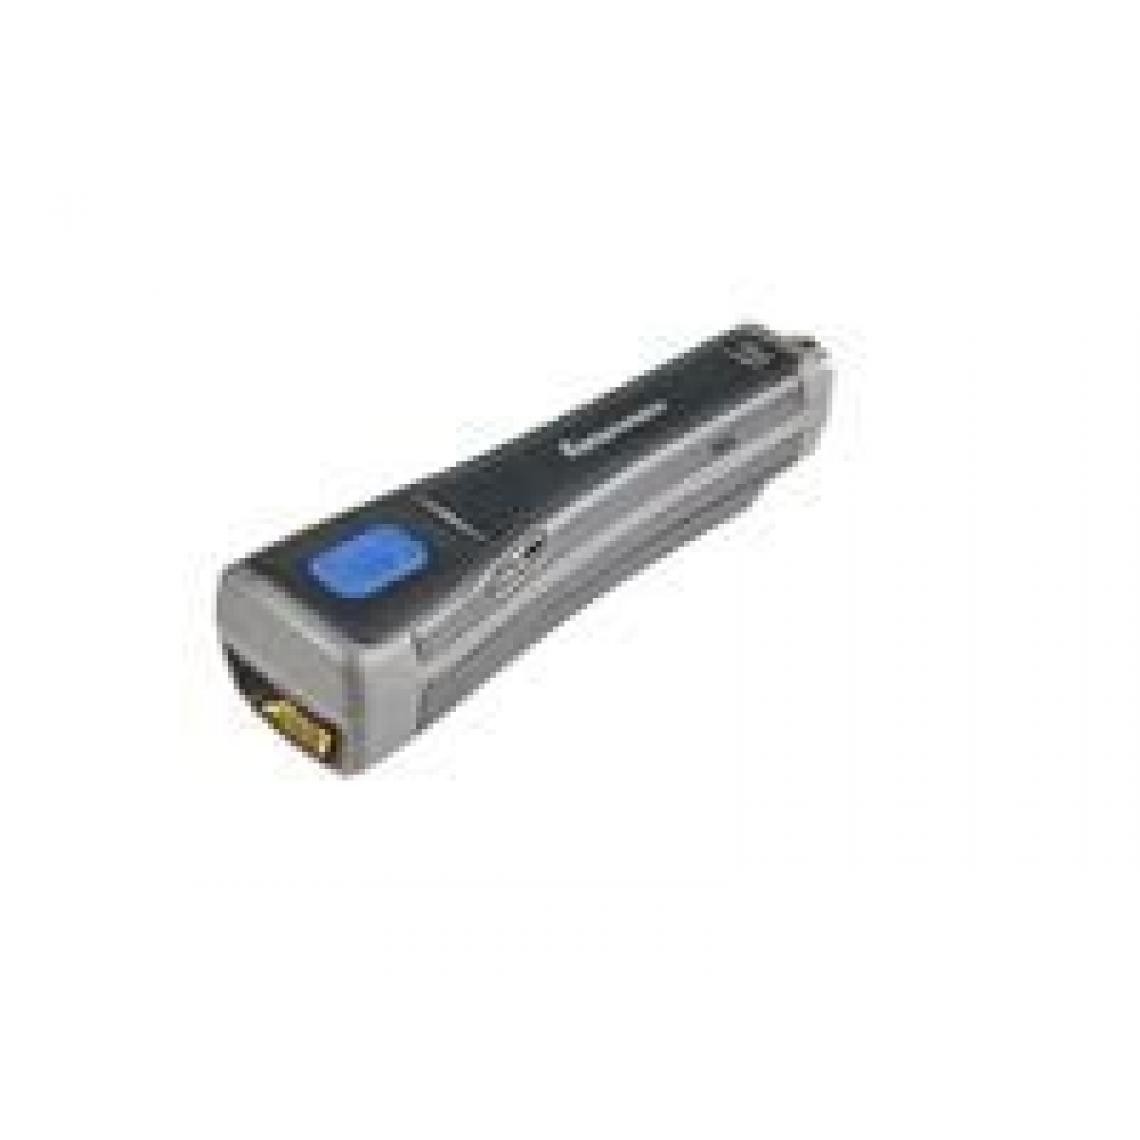 Inconnu - SF61BHP, Battery, Magnet Cap & Belt Loop - Scanner